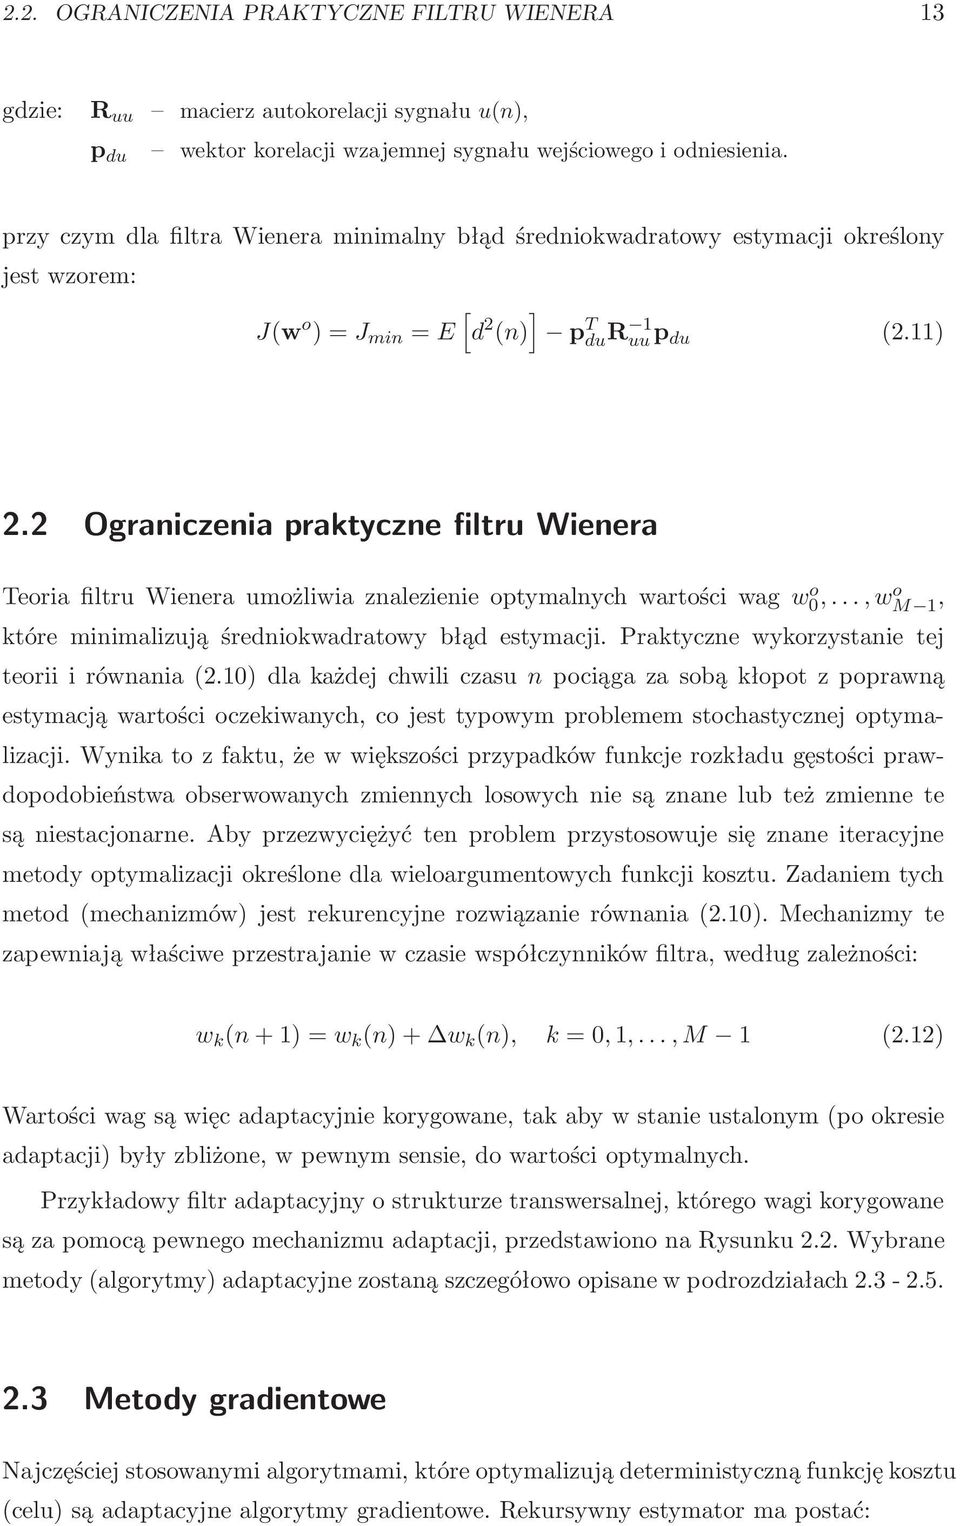 2 Ograniczenia praktyczne filtru Wienera TeoriafiltruWieneraumożliwiaznalezienieoptymalnychwartościwagw0 o,...,wo M 1, które minimalizują średniokwadratowy błąd estymacji.